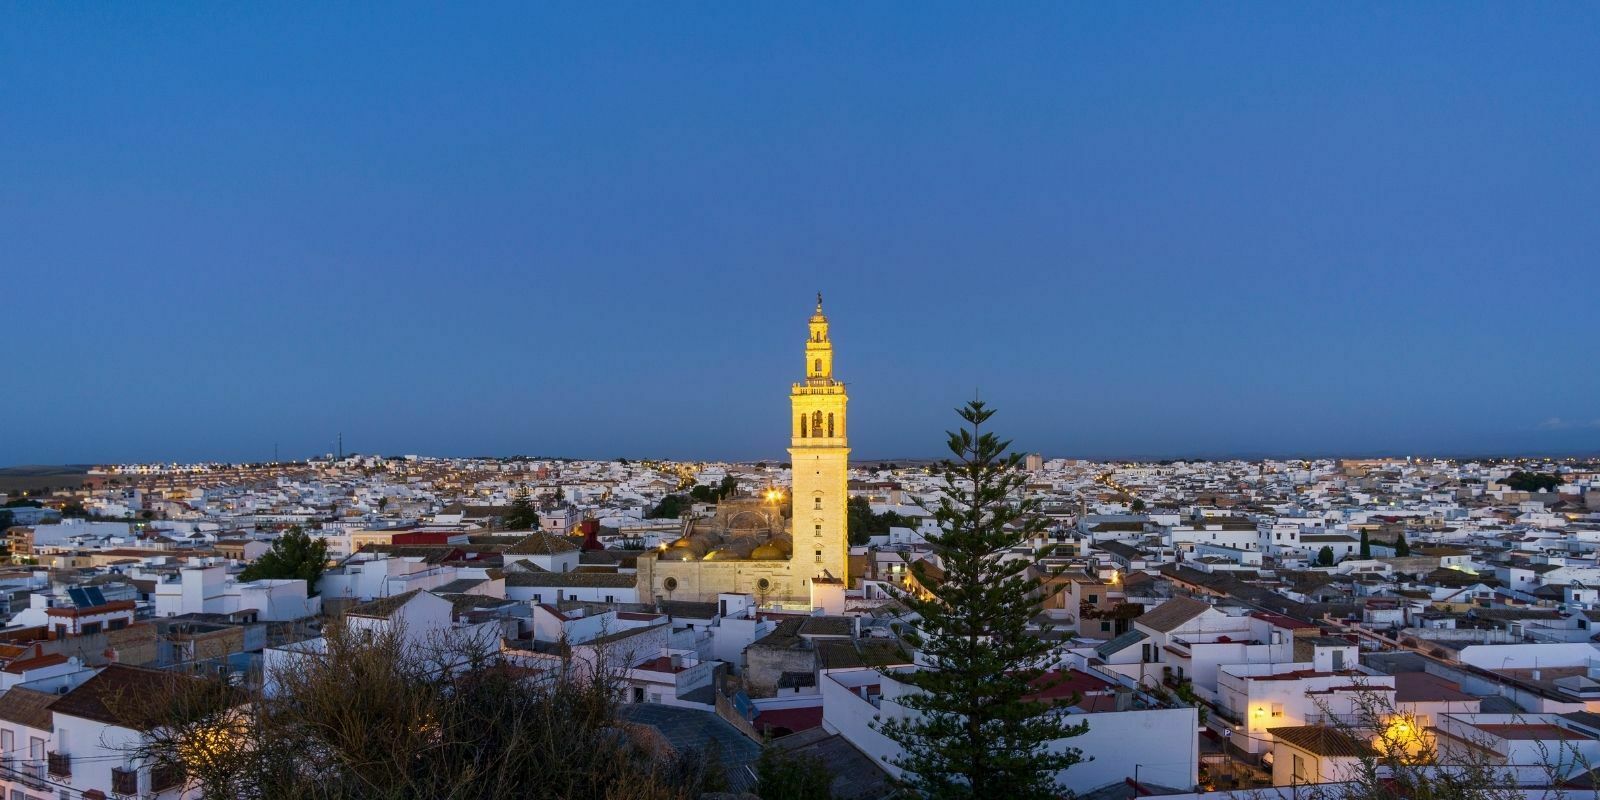 La ville de Lebrija en Espagne lance sa cryptomonnaie pour stimuler l’économie locale